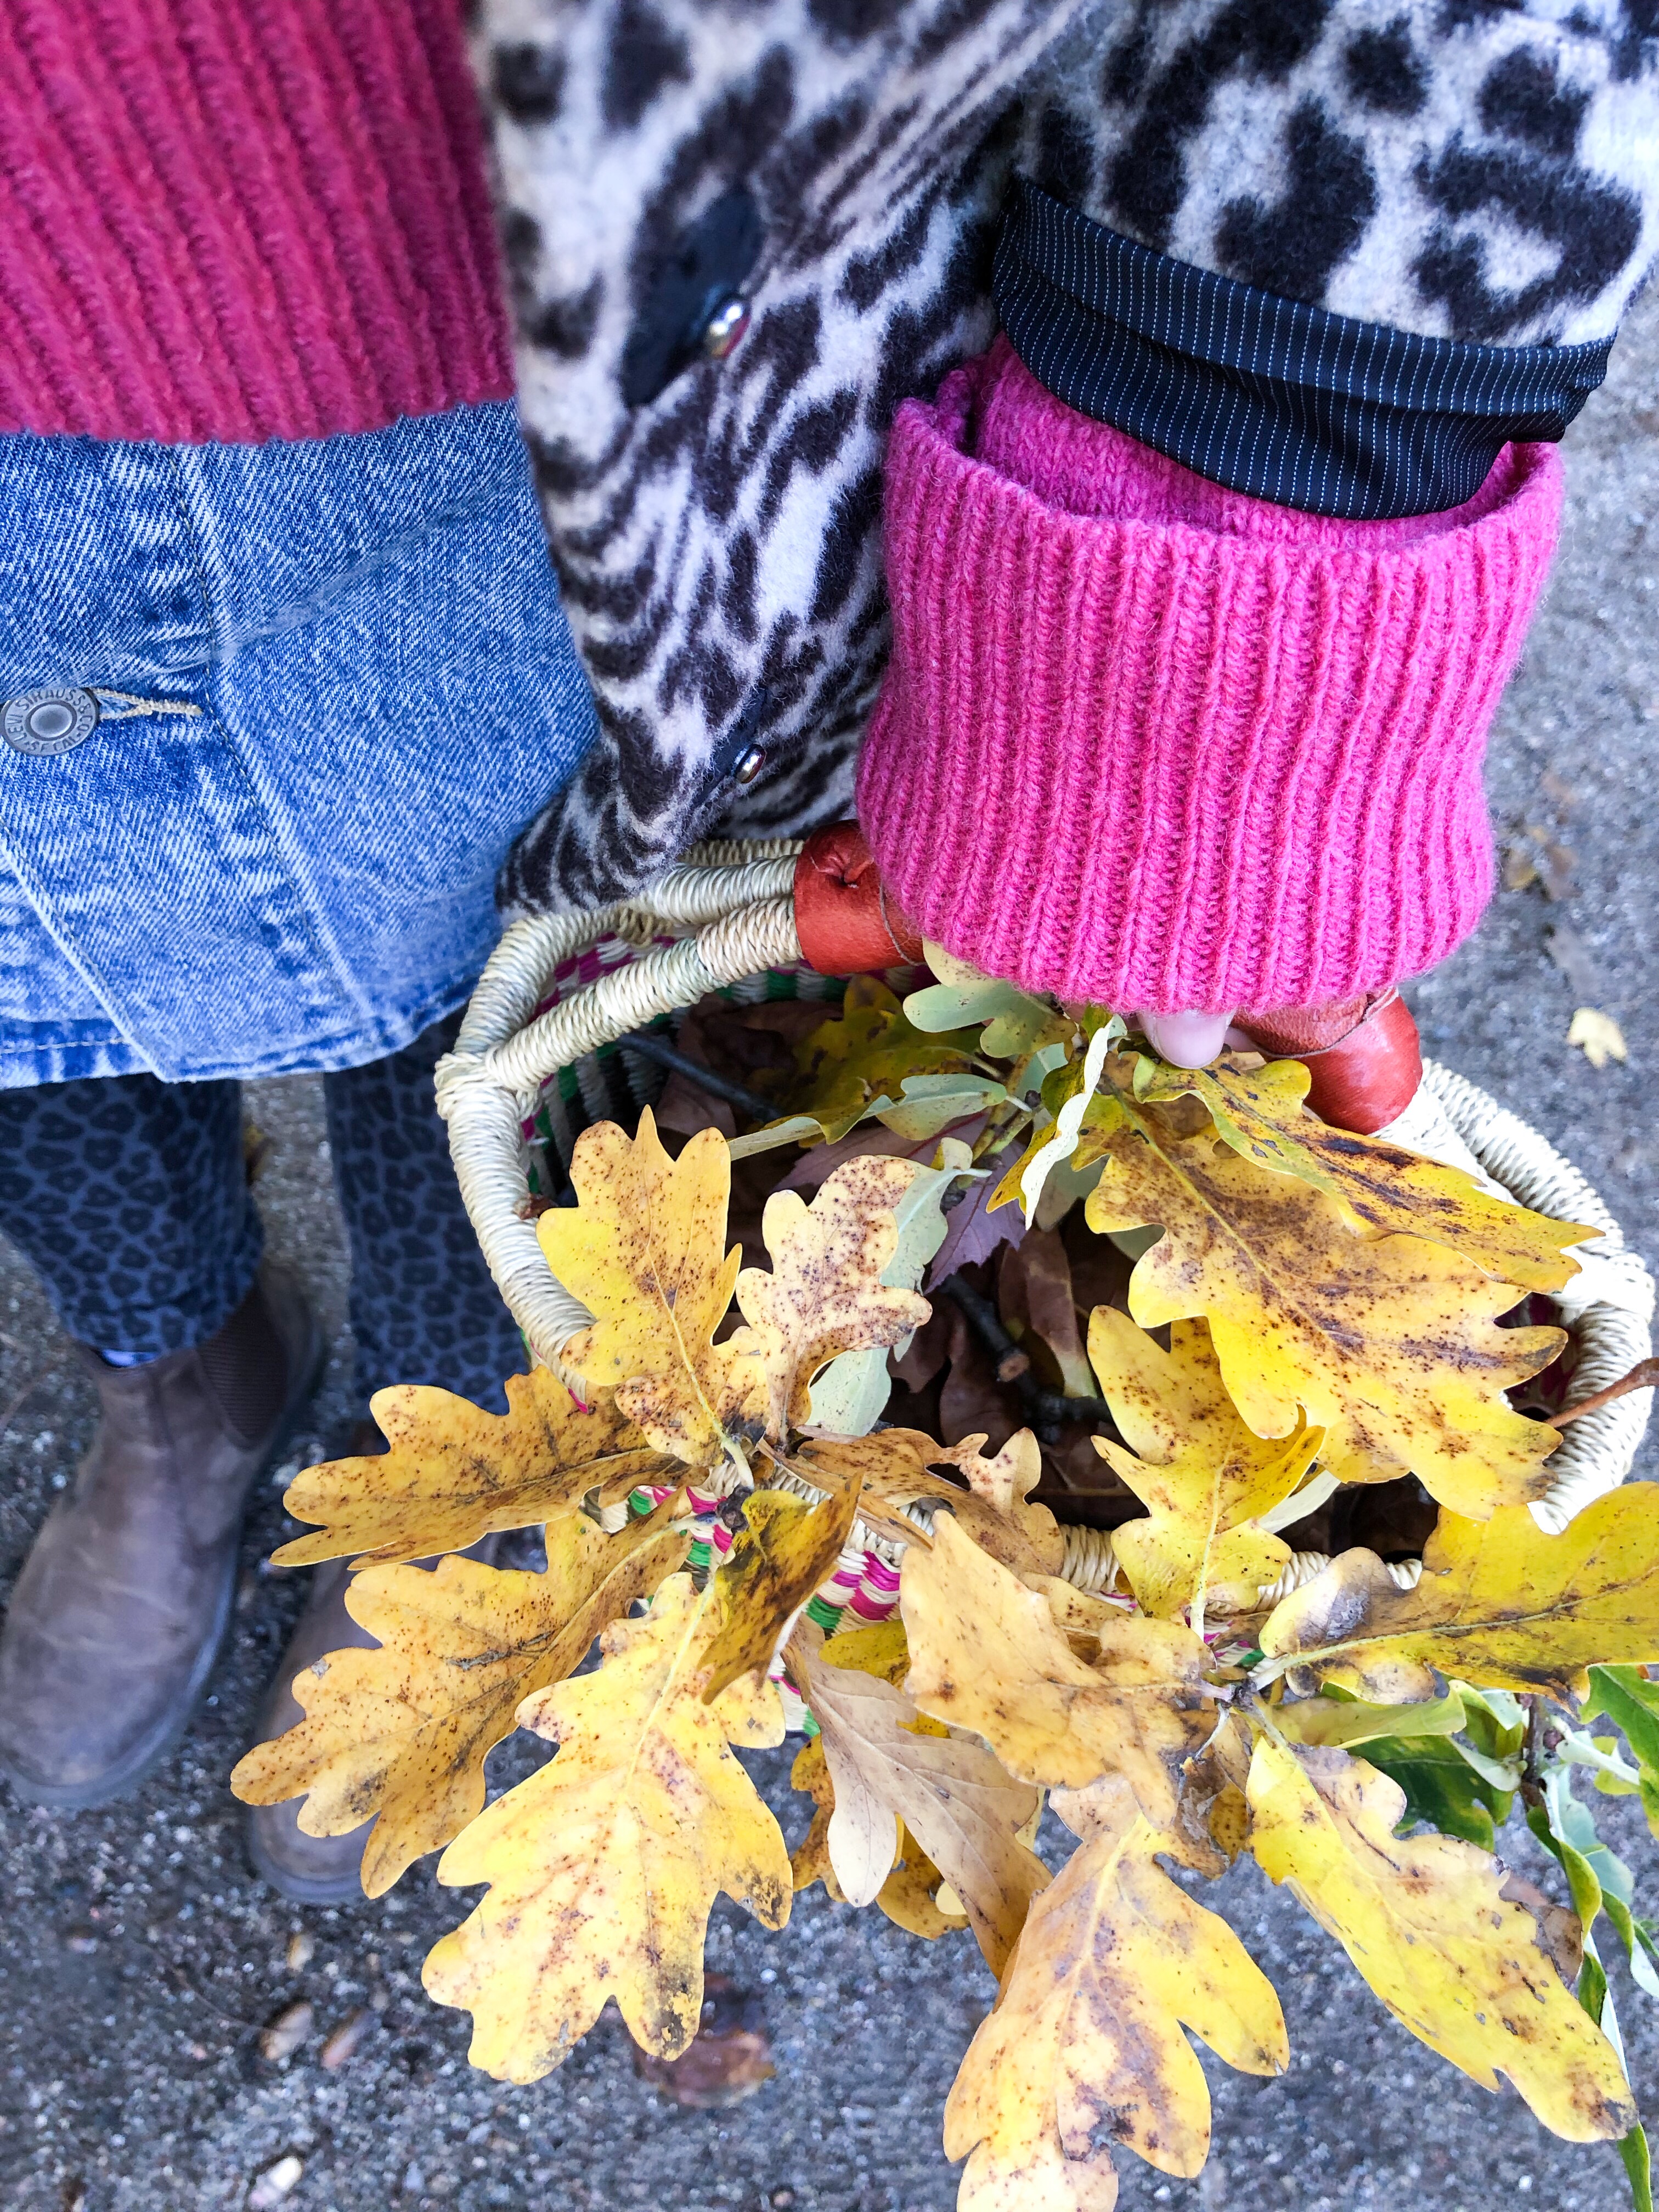 PinkepankStyle - Stillfreundliches Herbst Outfit mit Wollpullover und Leo-Mantel